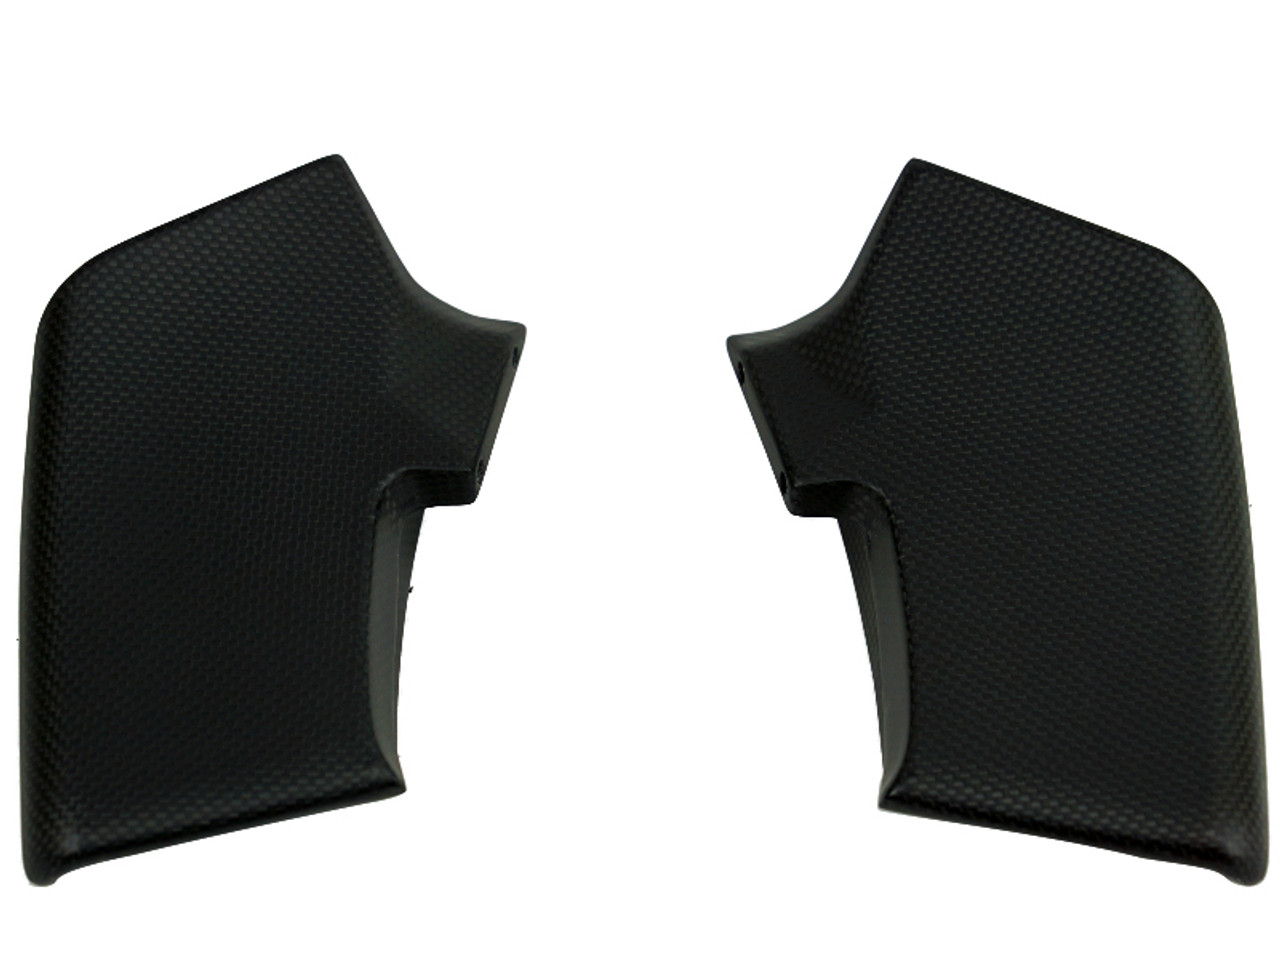 Upper Winglets in Matte Plain Weave Carbon Fiber for Ducati Streetfighter V4